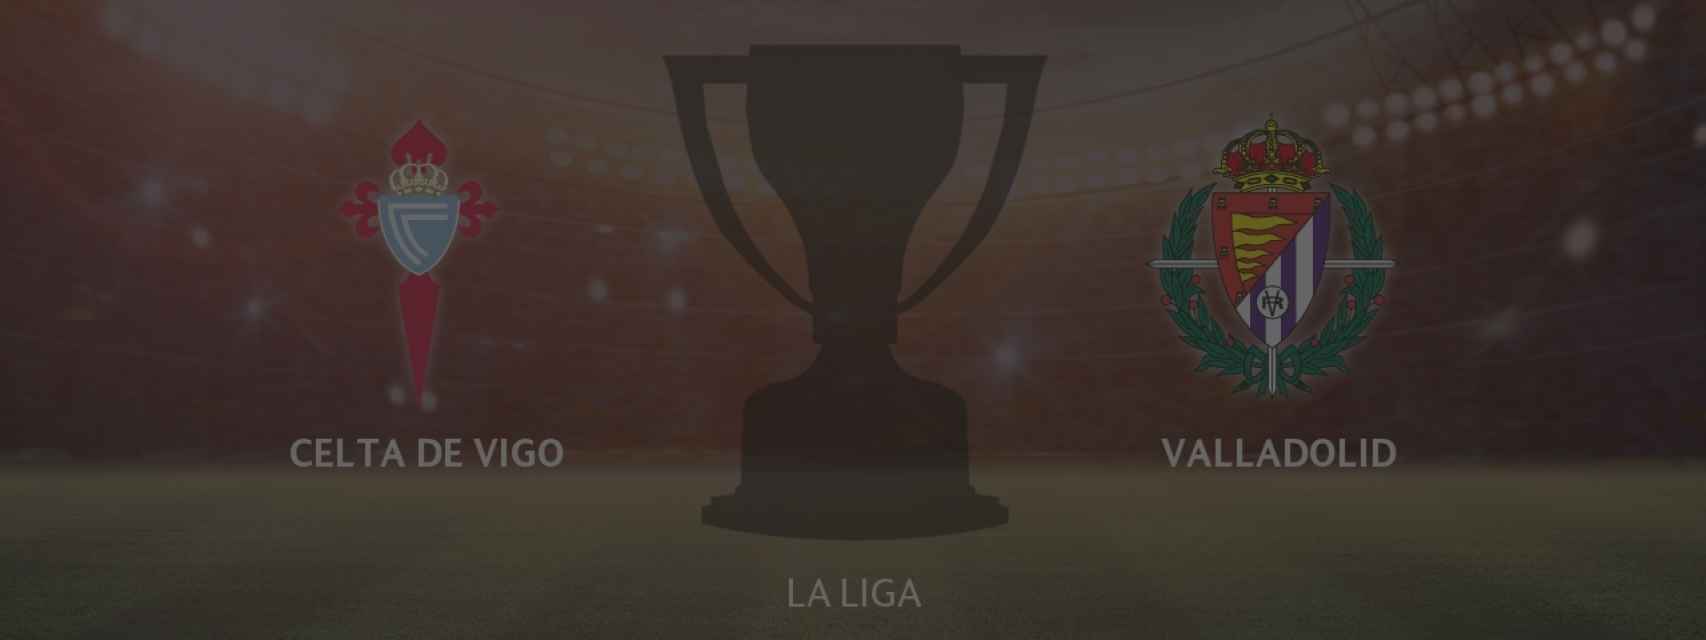 Celta de Vigo - Real Valladolid, siga en directo el partido de la La Liga